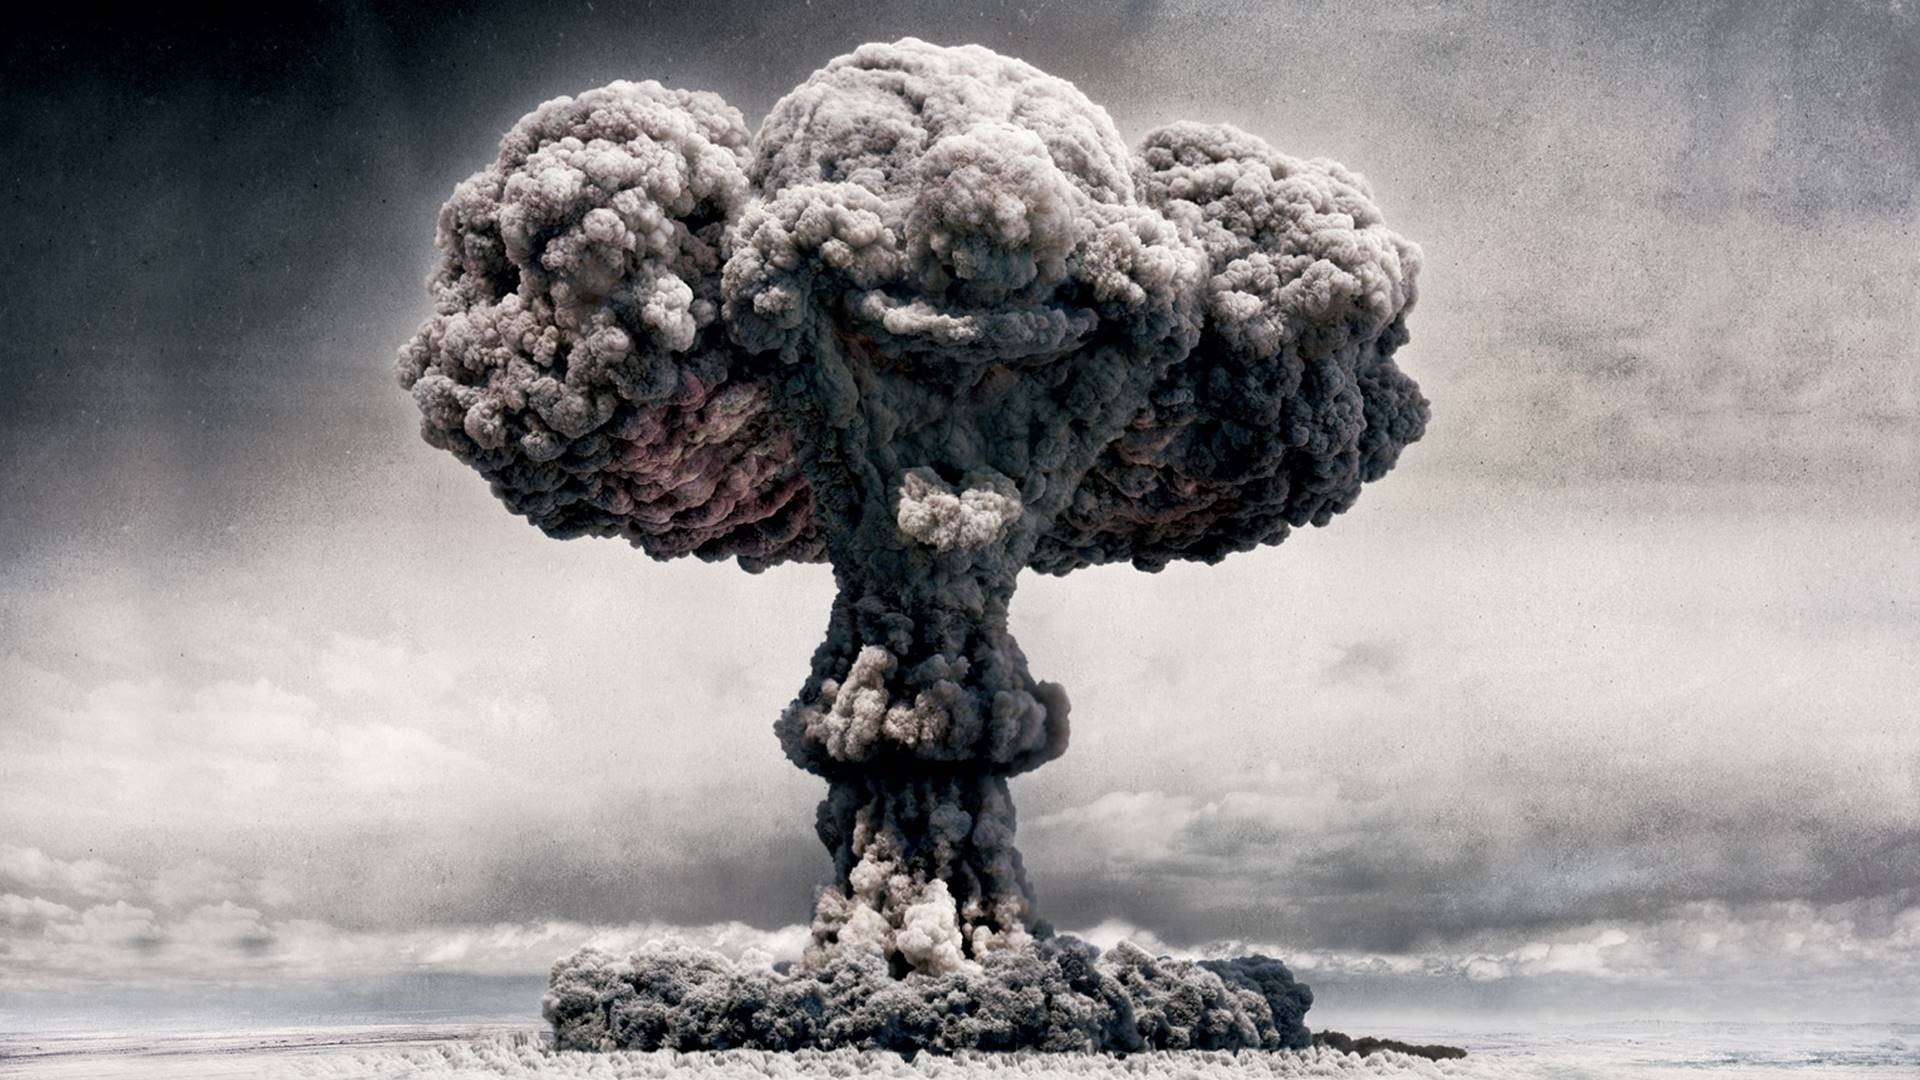 General 1920x1080 nuclear digital art atomic bomb mushroom clouds clown explosion